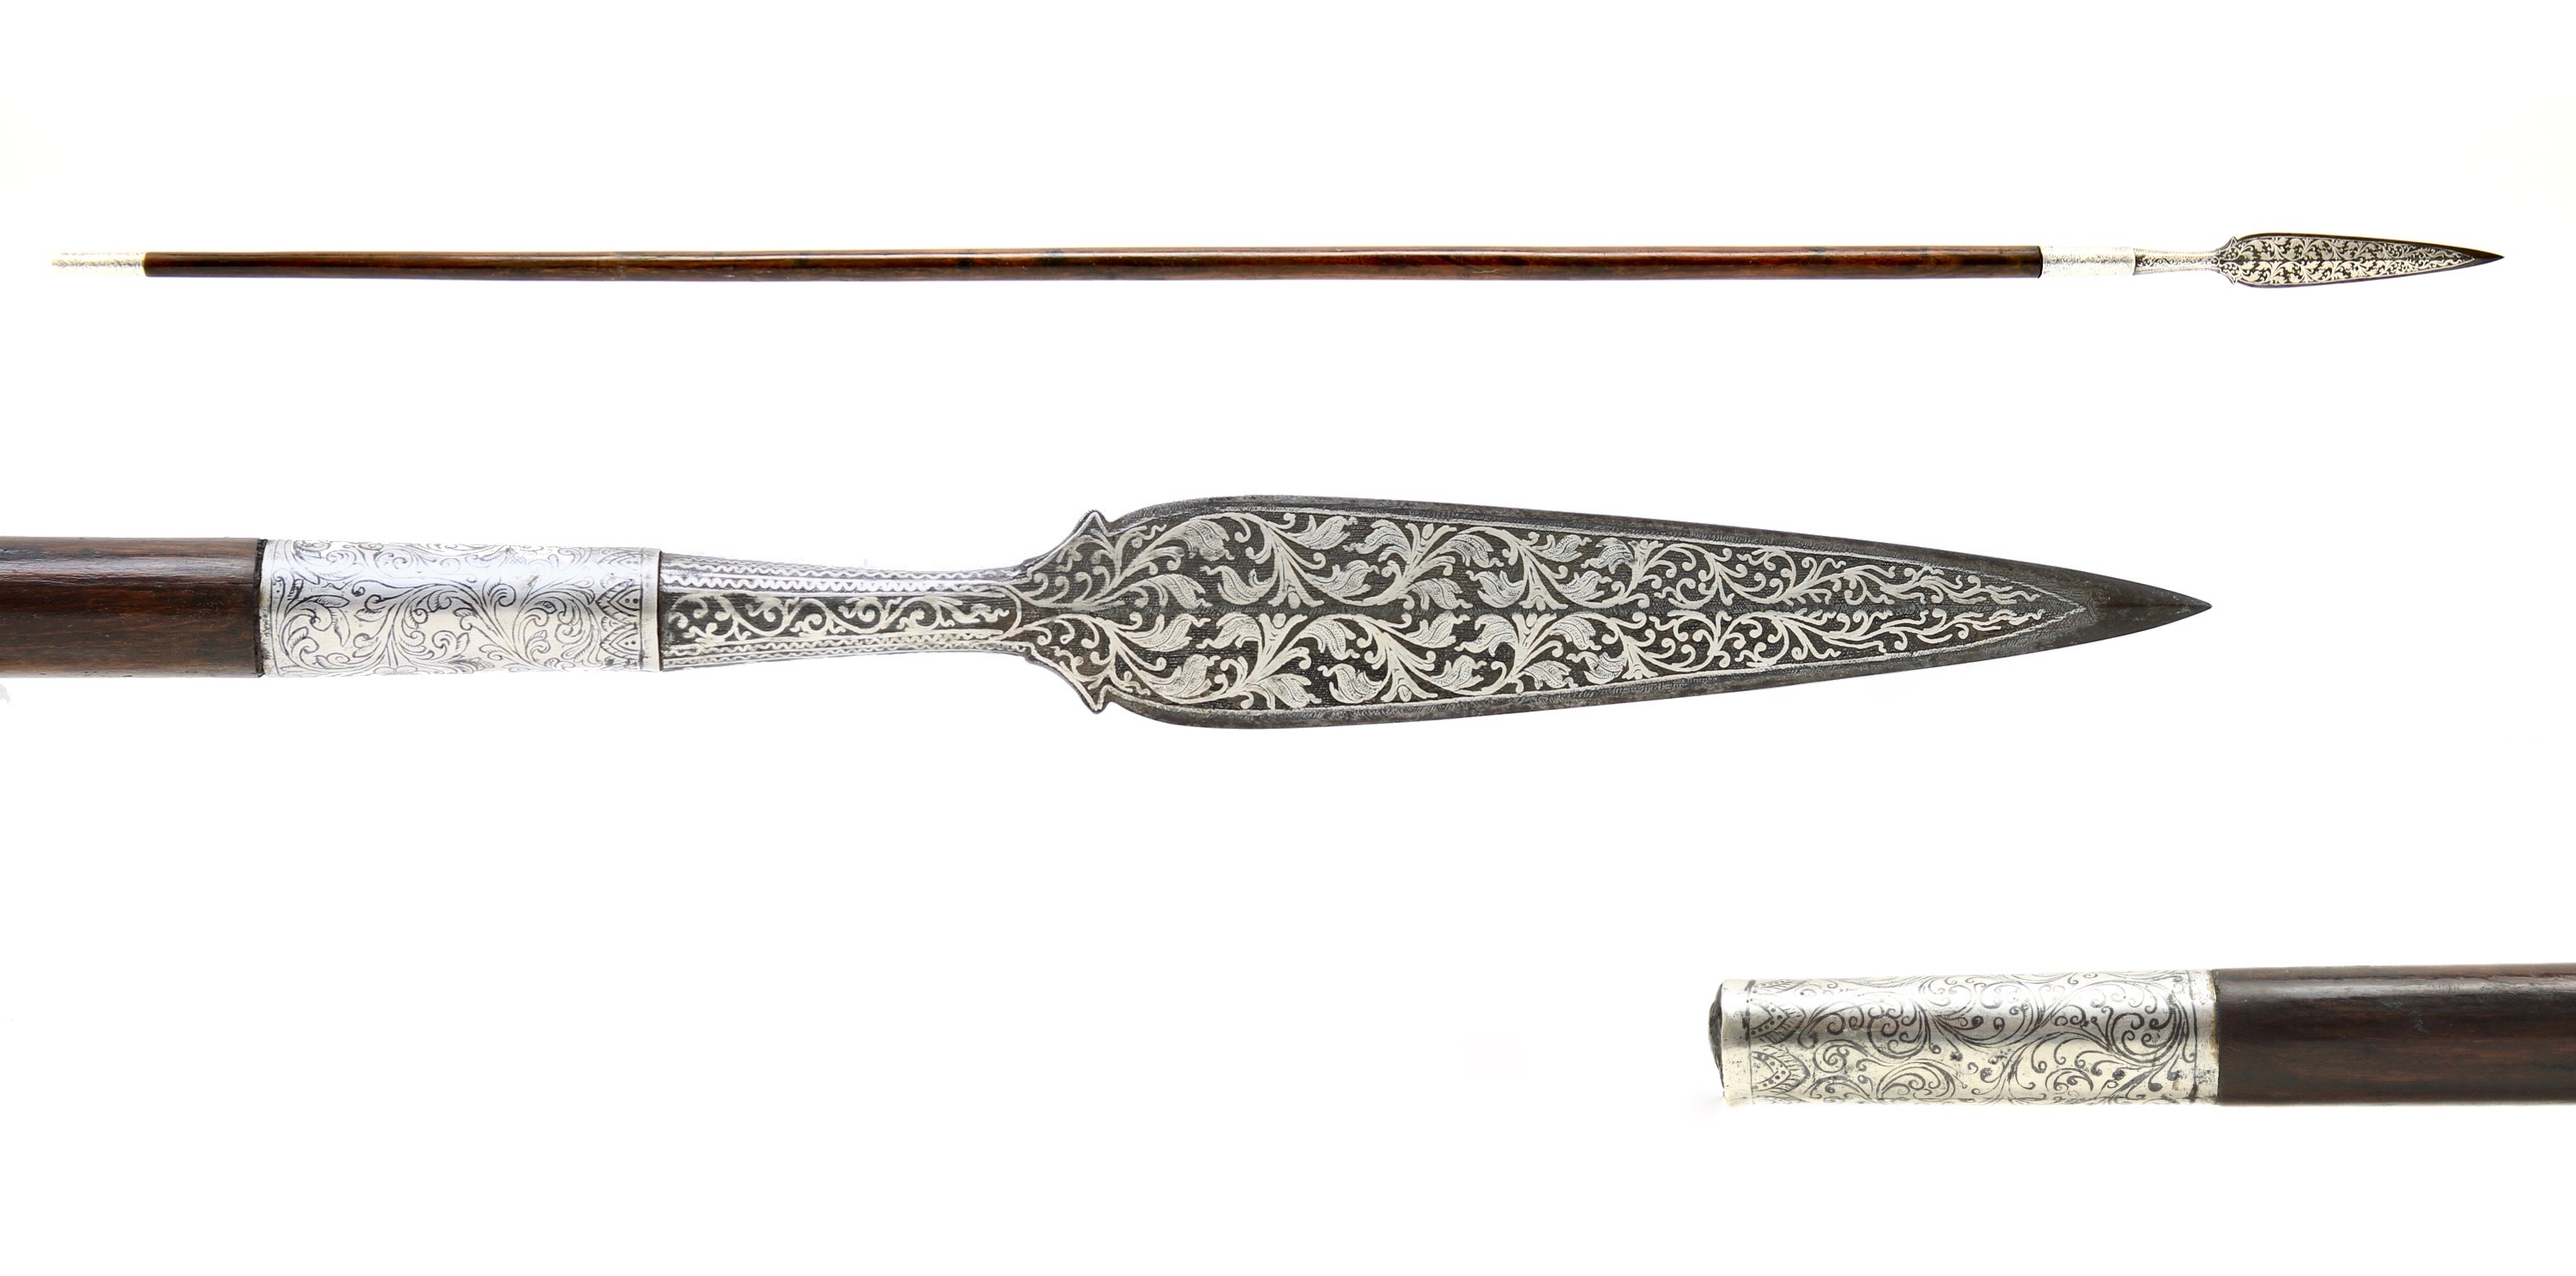 A Burmese spear